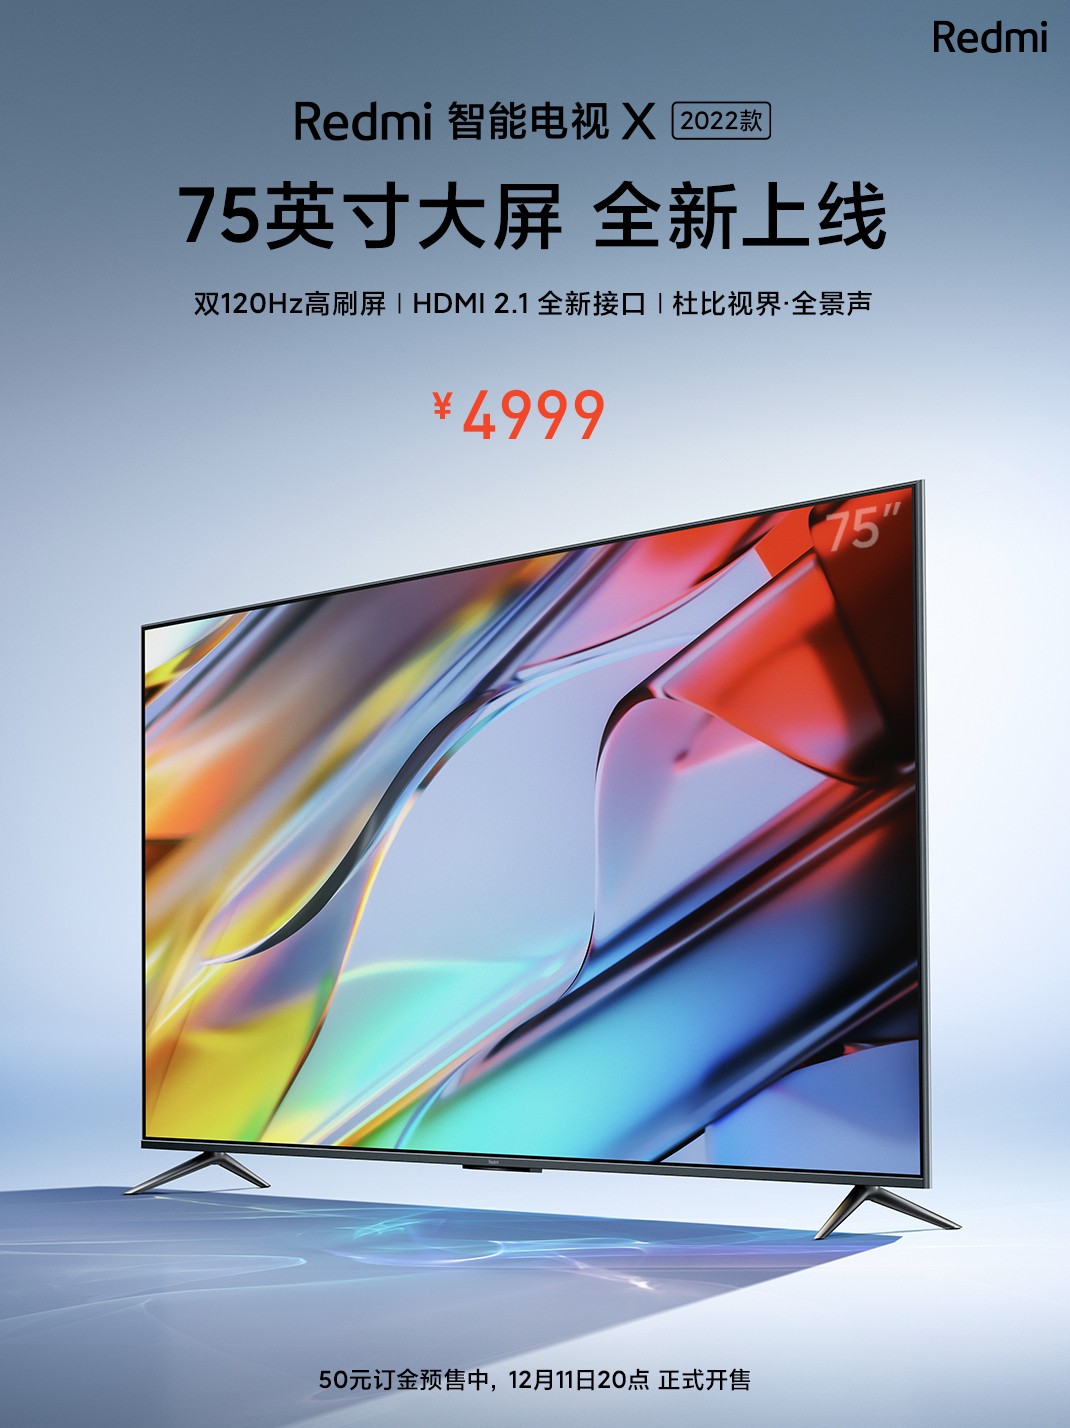 Redmi智能电视X 2022款上线：75英寸 卖价4999元